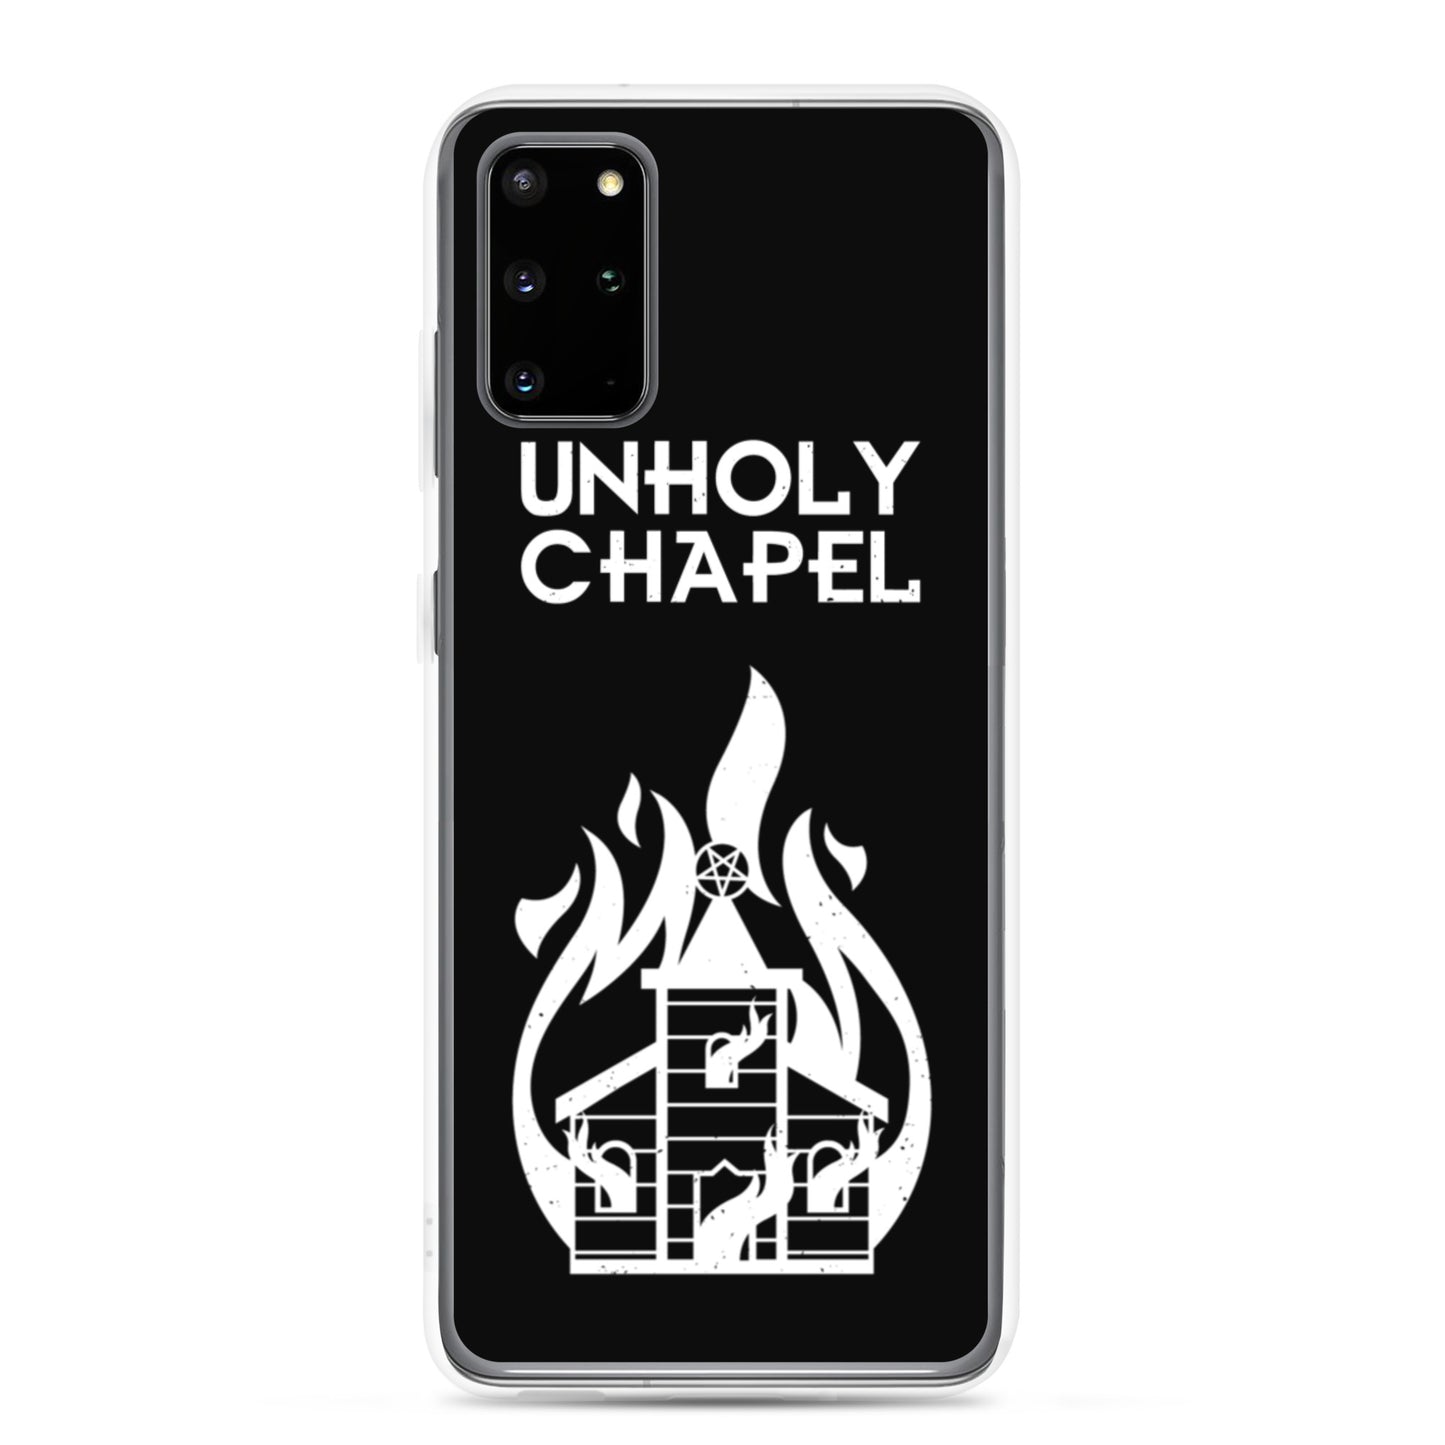 Unholy chapel Samsung Case